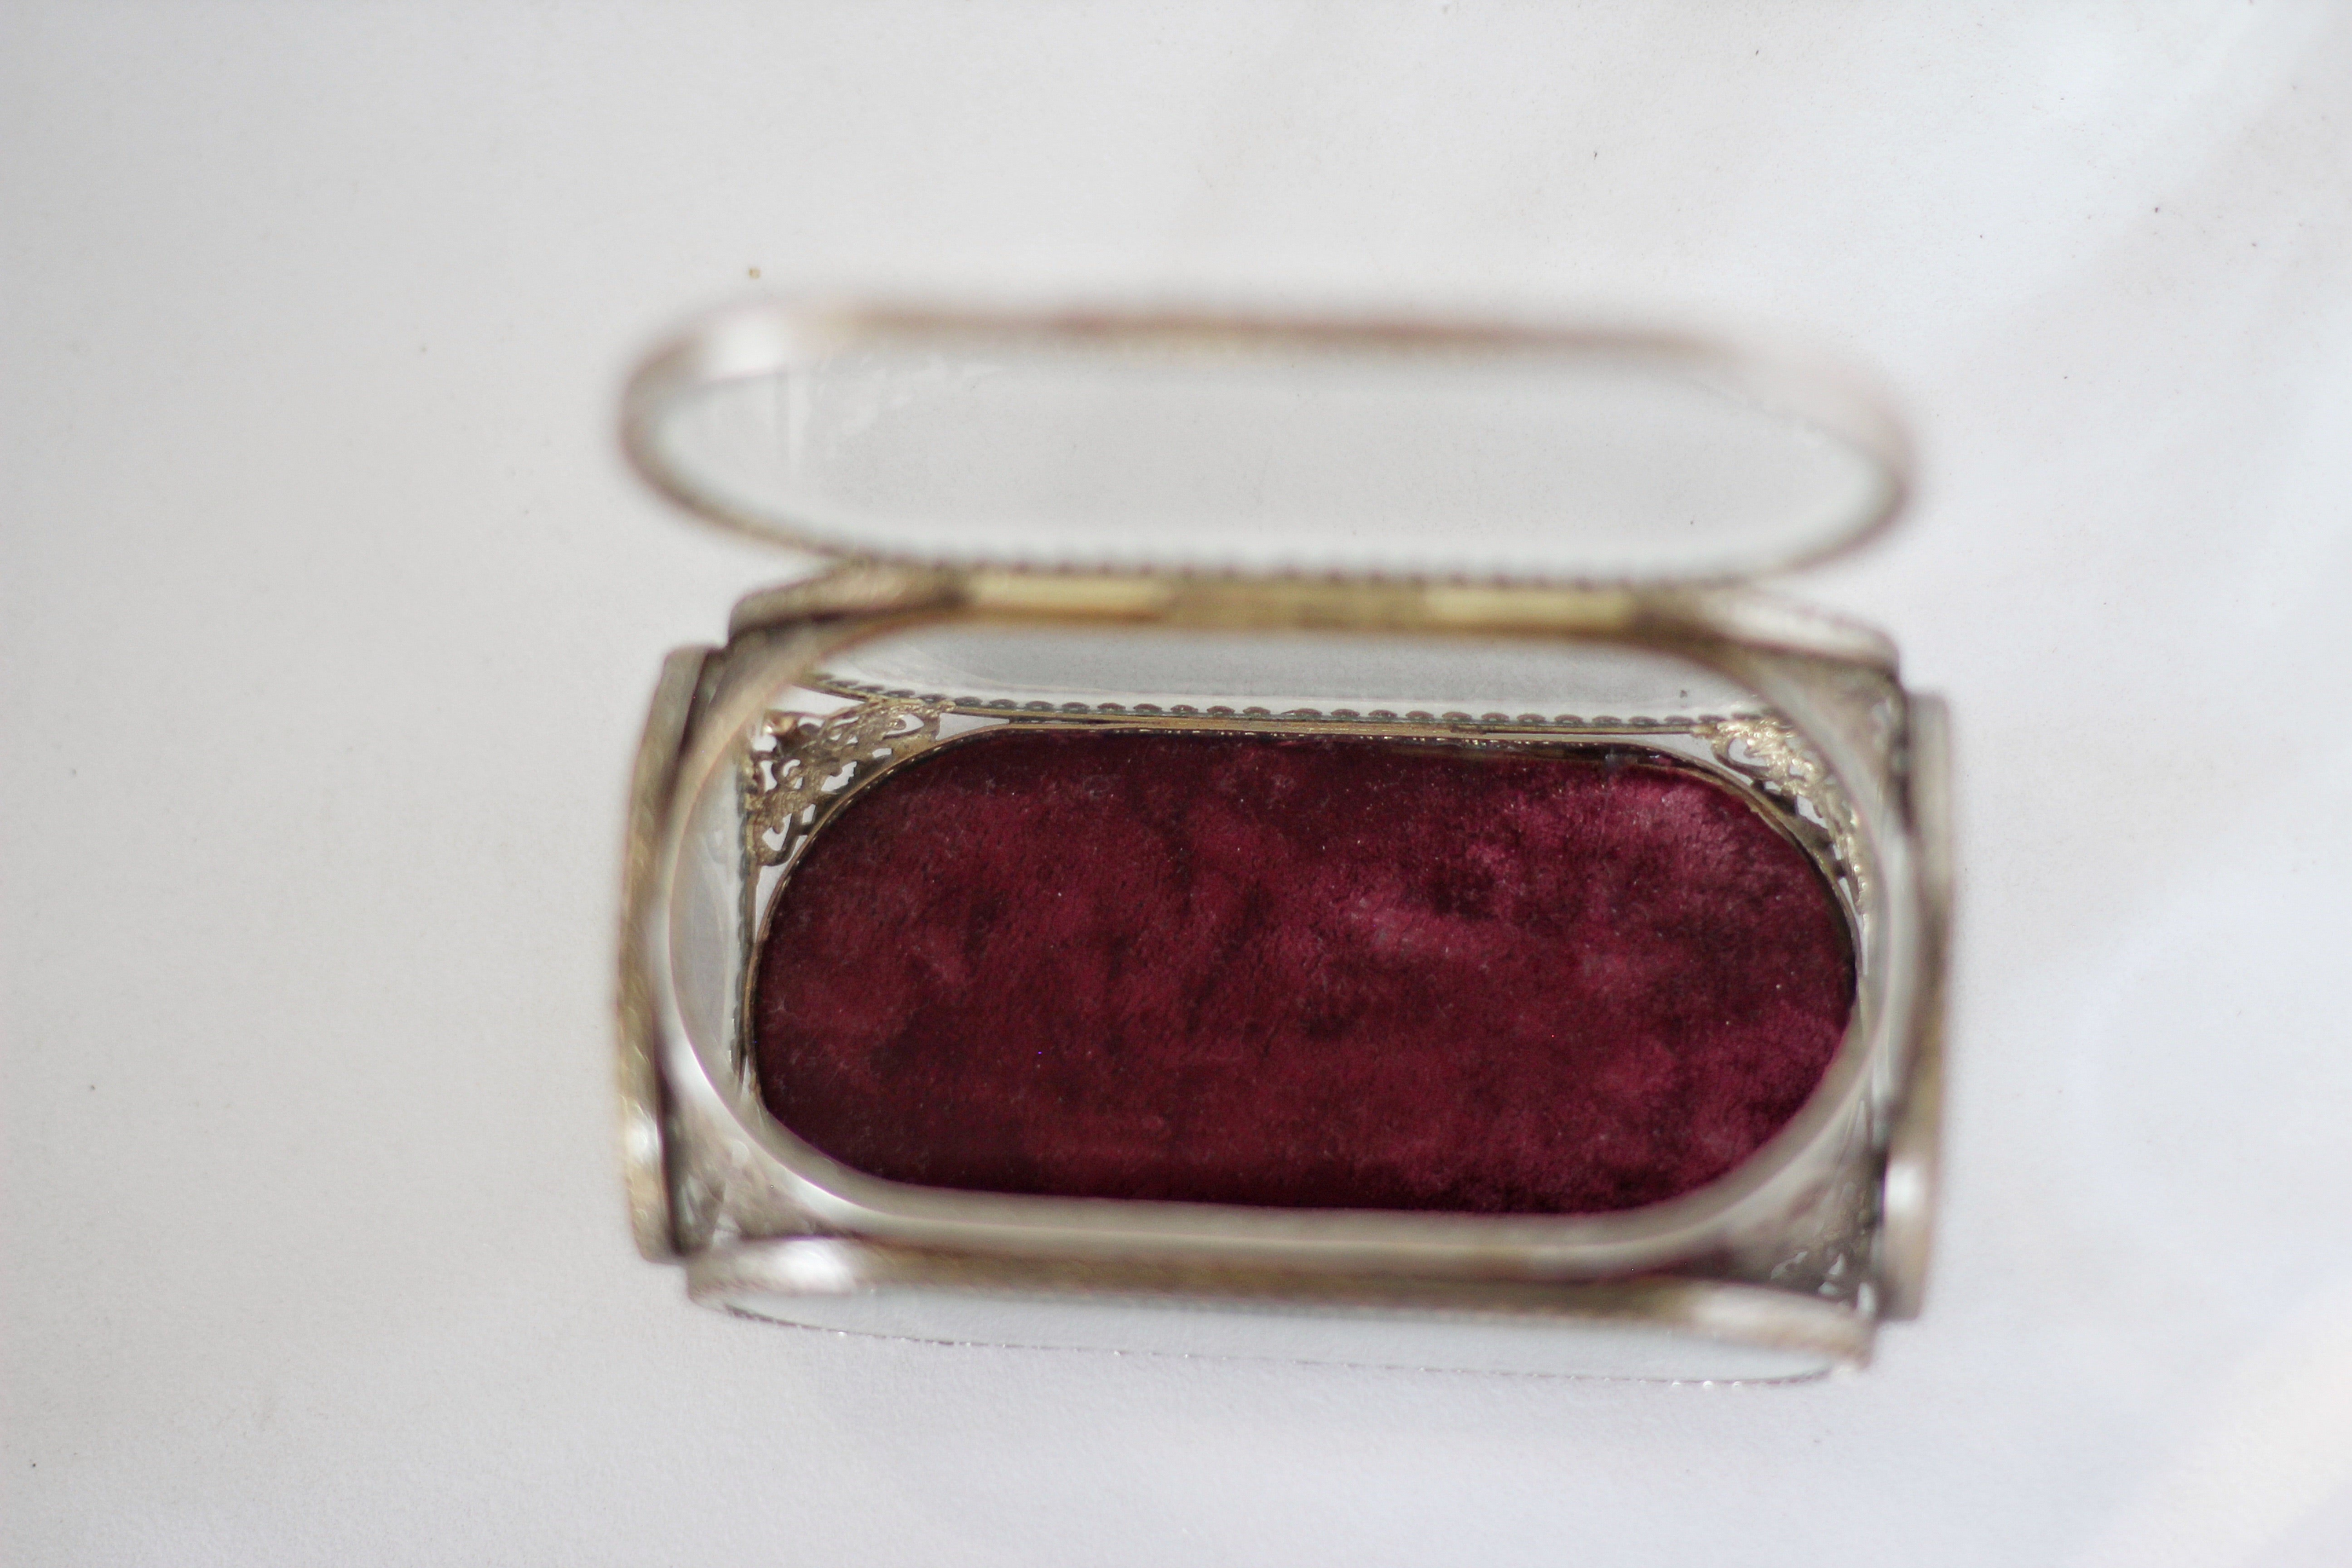 Vintage French Ormolu Filigree Jewelry Box